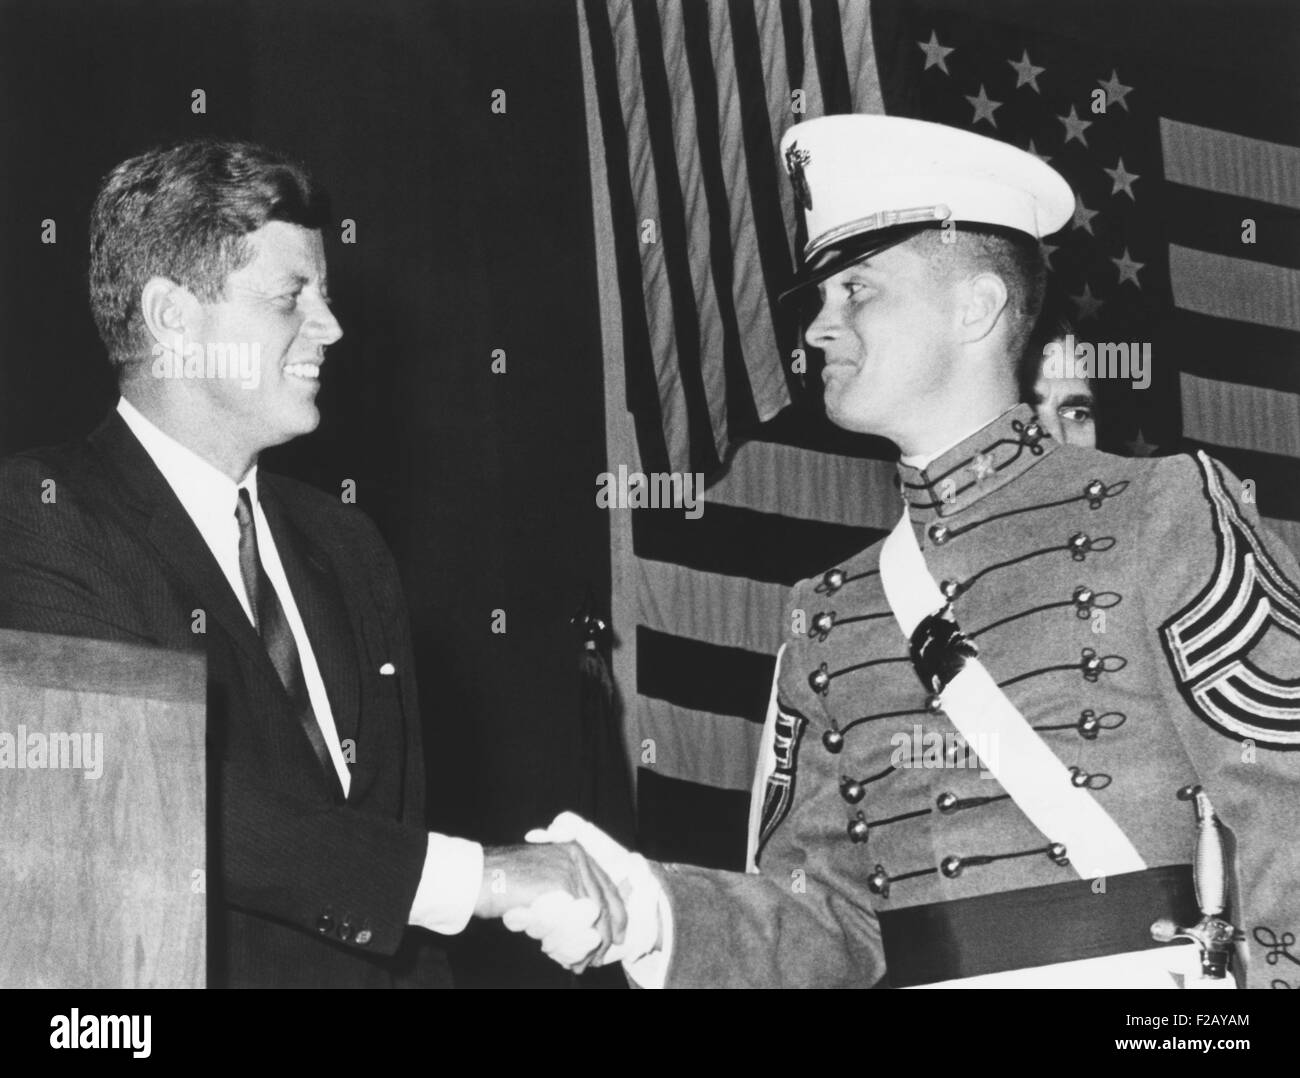 Präsident Kennedy schüttelt Hände mit jüngsterer Sohn John H. Fagan Jr. in West Point. Fagan hieß die No. 1-Mann in General Order of Merit in der Militärakademie Abschlussklasse des Jahres 1962. (CSU 2015 9 810) Stockfoto